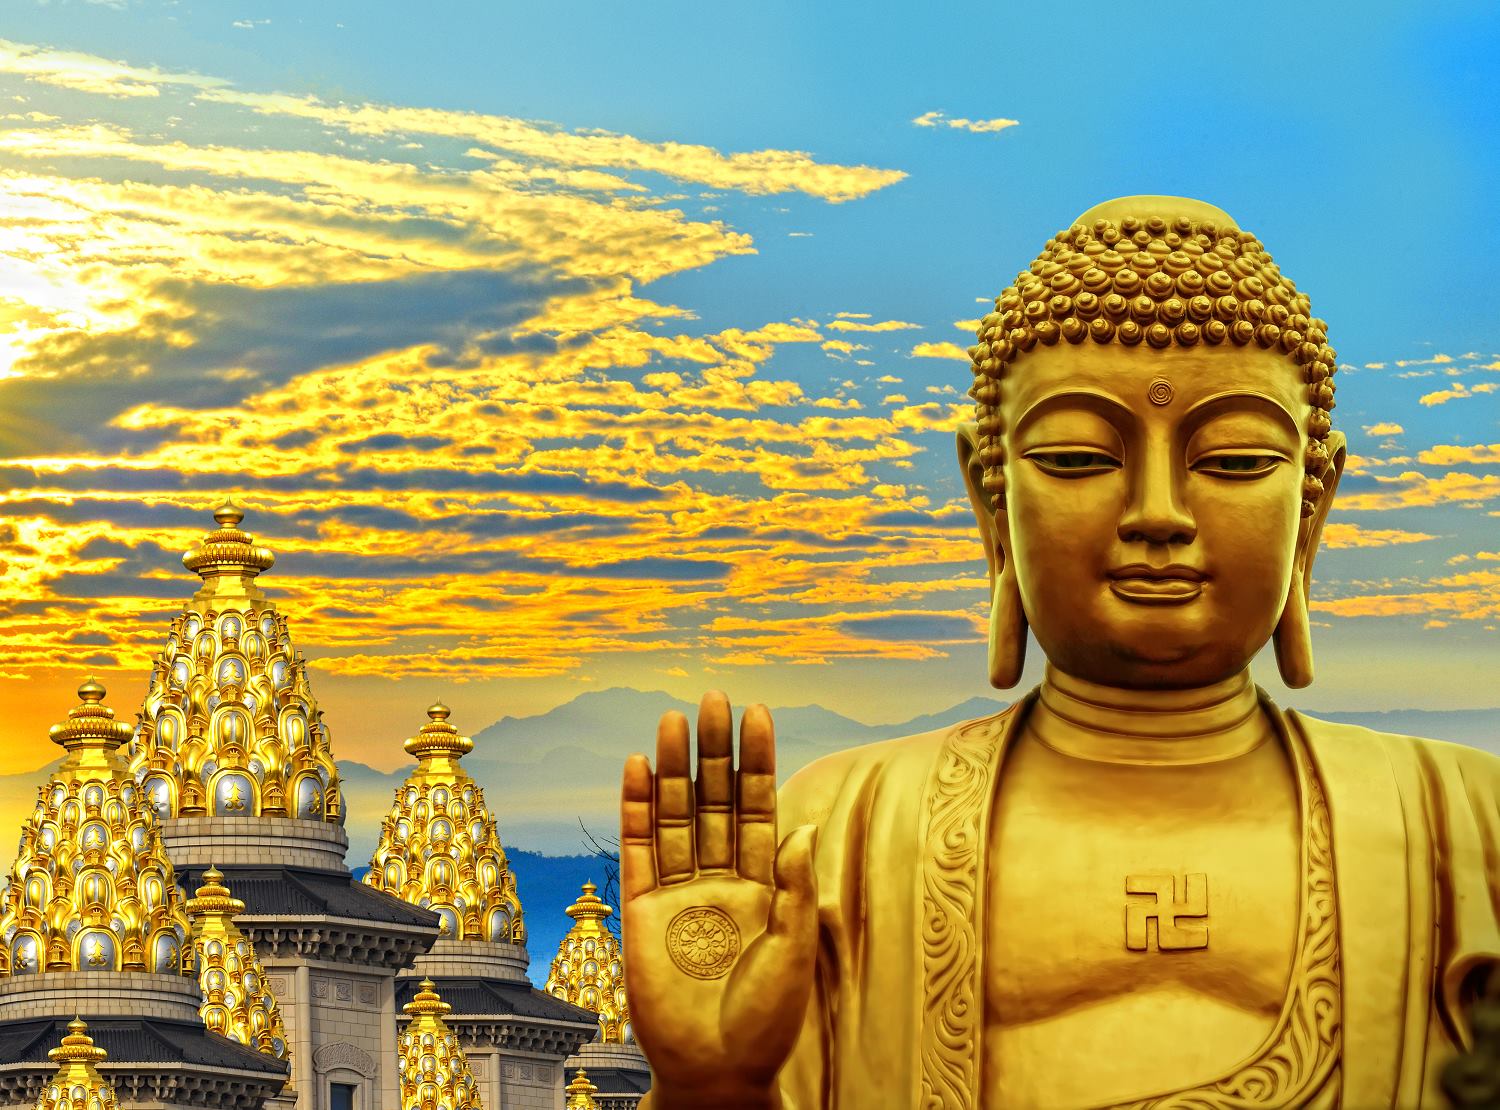 Triết lý Phật giáo: Triết lý Phật giáo là những giá trị vô giá của cuộc sống. Hãy đến với chúng tôi để hiểu thêm về tôn giáo Phật Giáo và tìm kiếm cách để áp dụng triết lý này vào cuộc sống của bạn. Chúng tôi tin rằng, đó là những điều tốt đẹp, giúp bạn trở nên tốt hơn và hạnh phúc hơn trong cuộc sống.